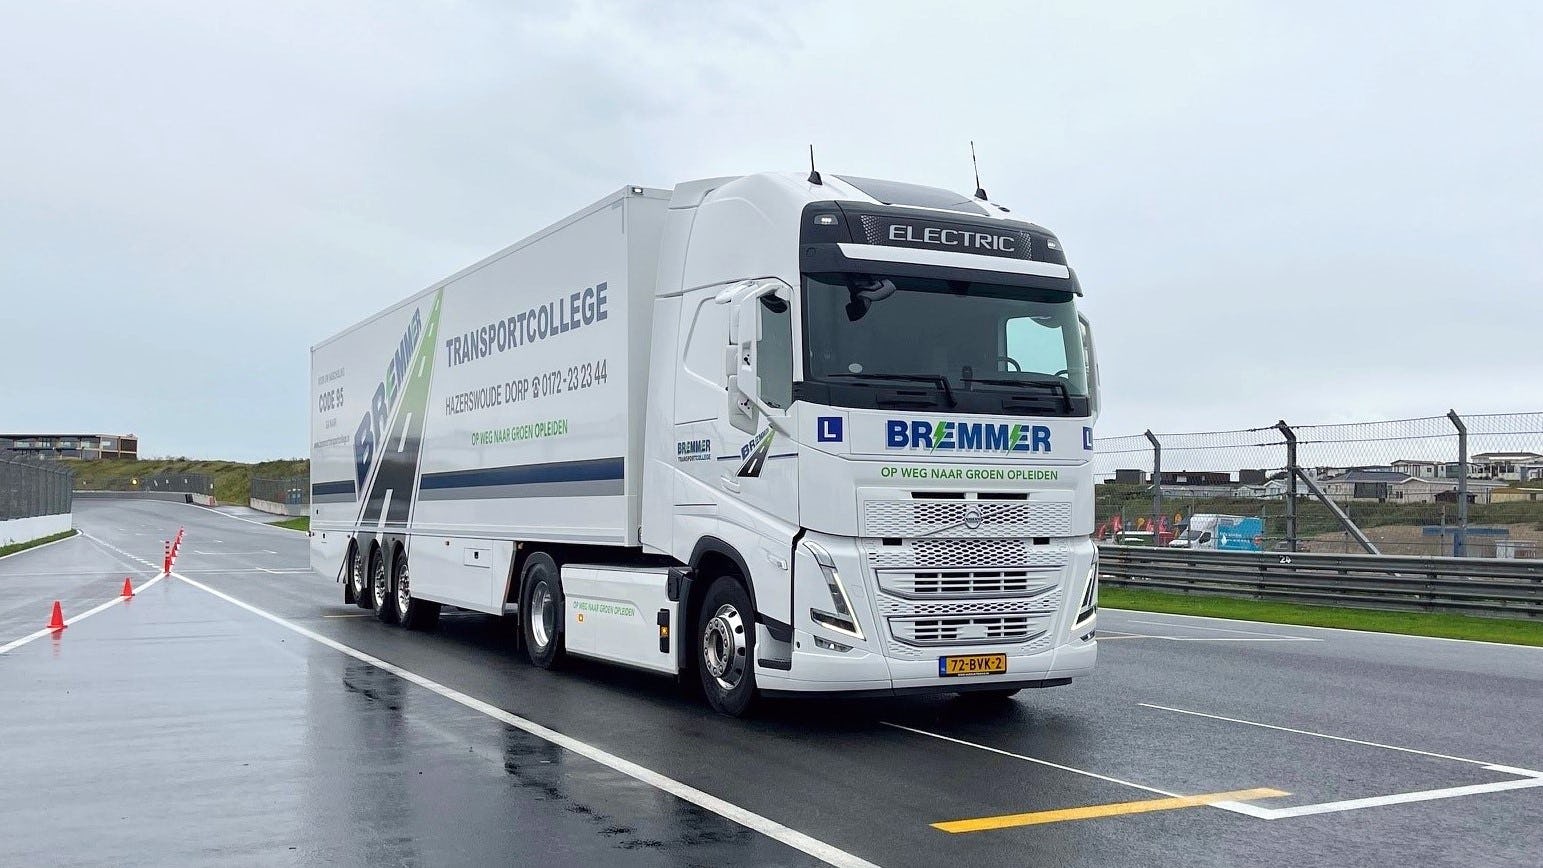 Lessen met een e-truck kan nu bij Bremmer Transportcollege